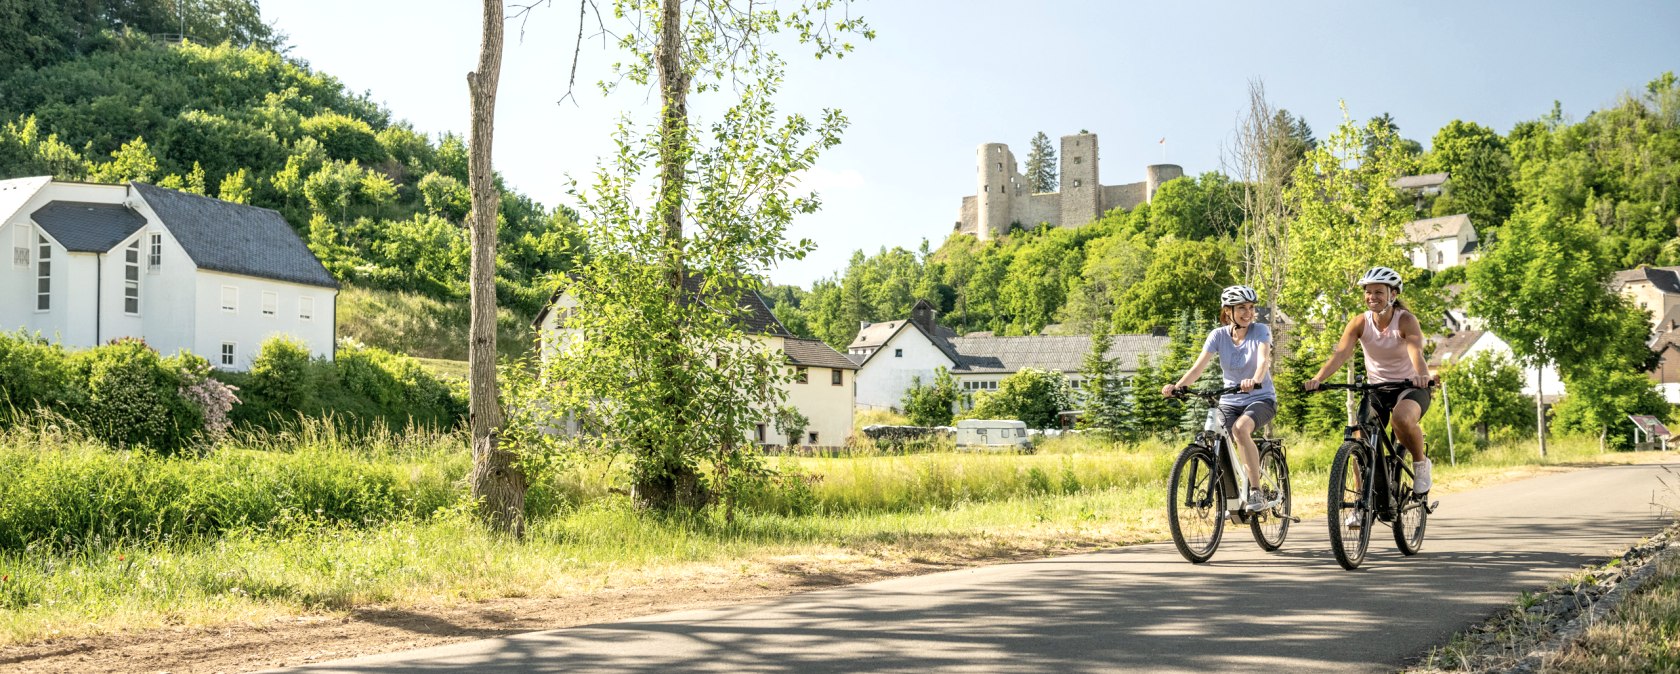 Nims-Radweg mit Burg Schönecken im Hintergrund, © Eifel Tourismus GmbH, Dominik Ketz